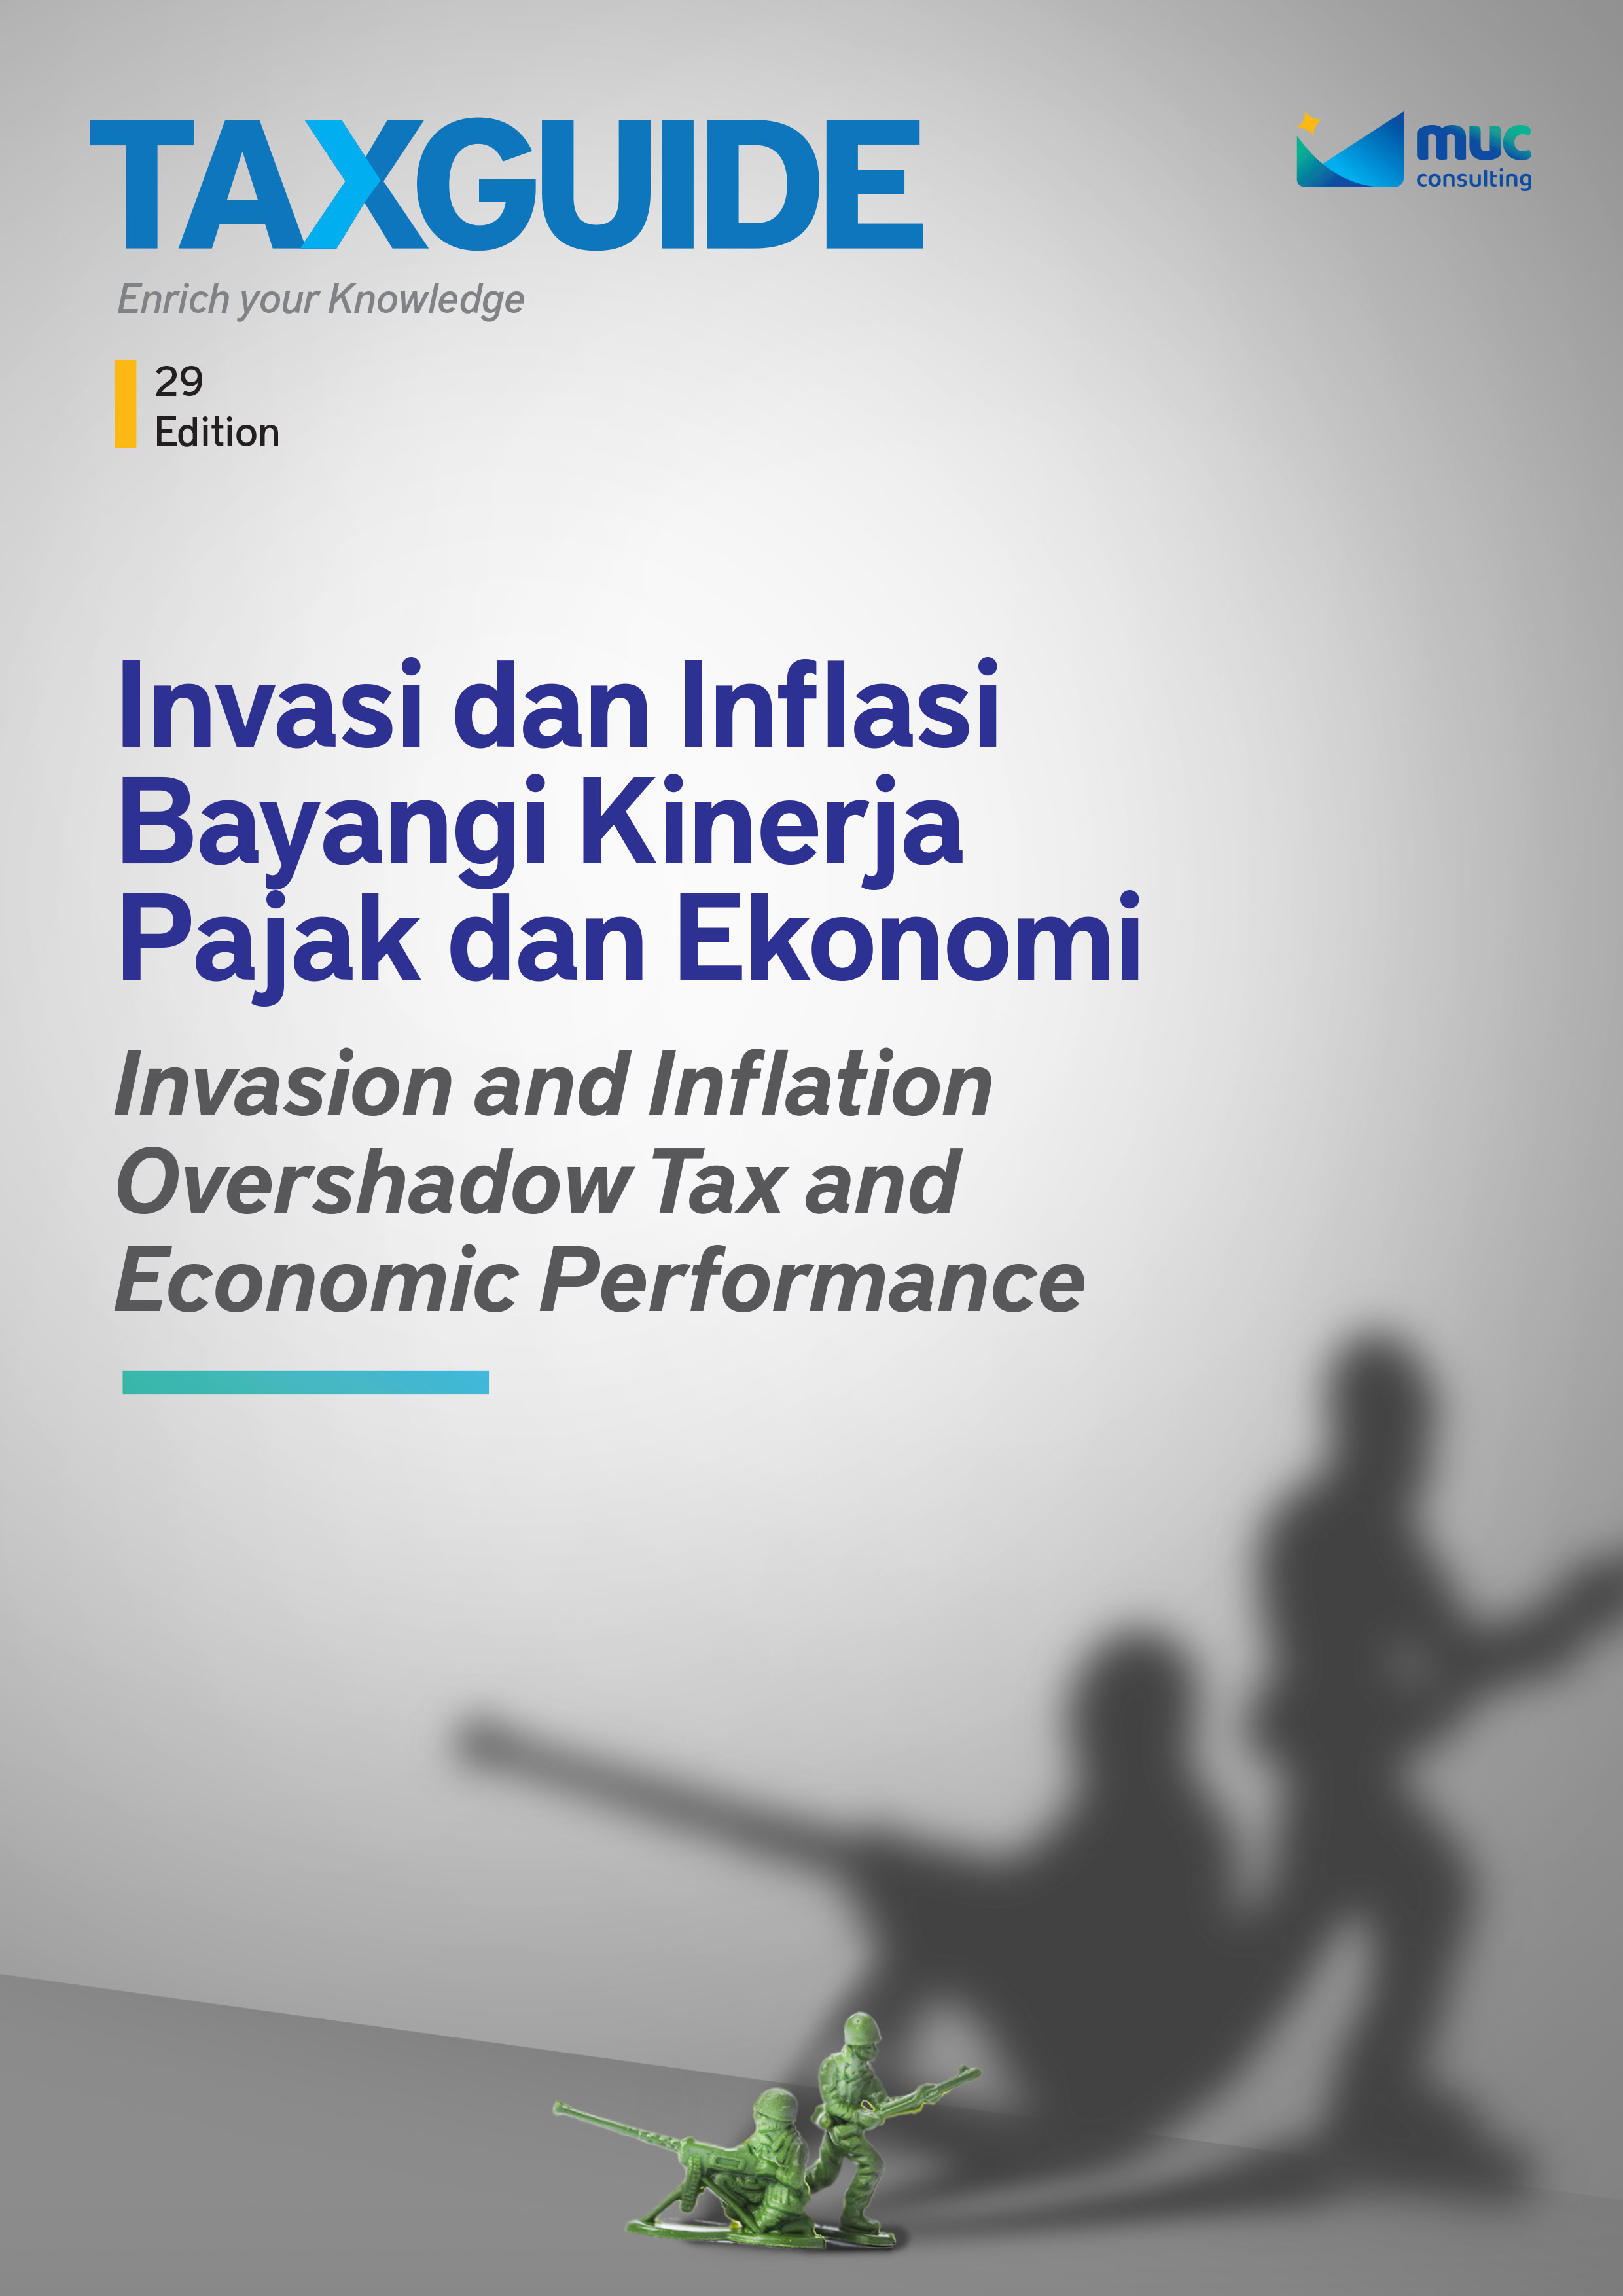 Invasi dan Inflasi Bayangi Kinerja Pajak dan Ekonomi